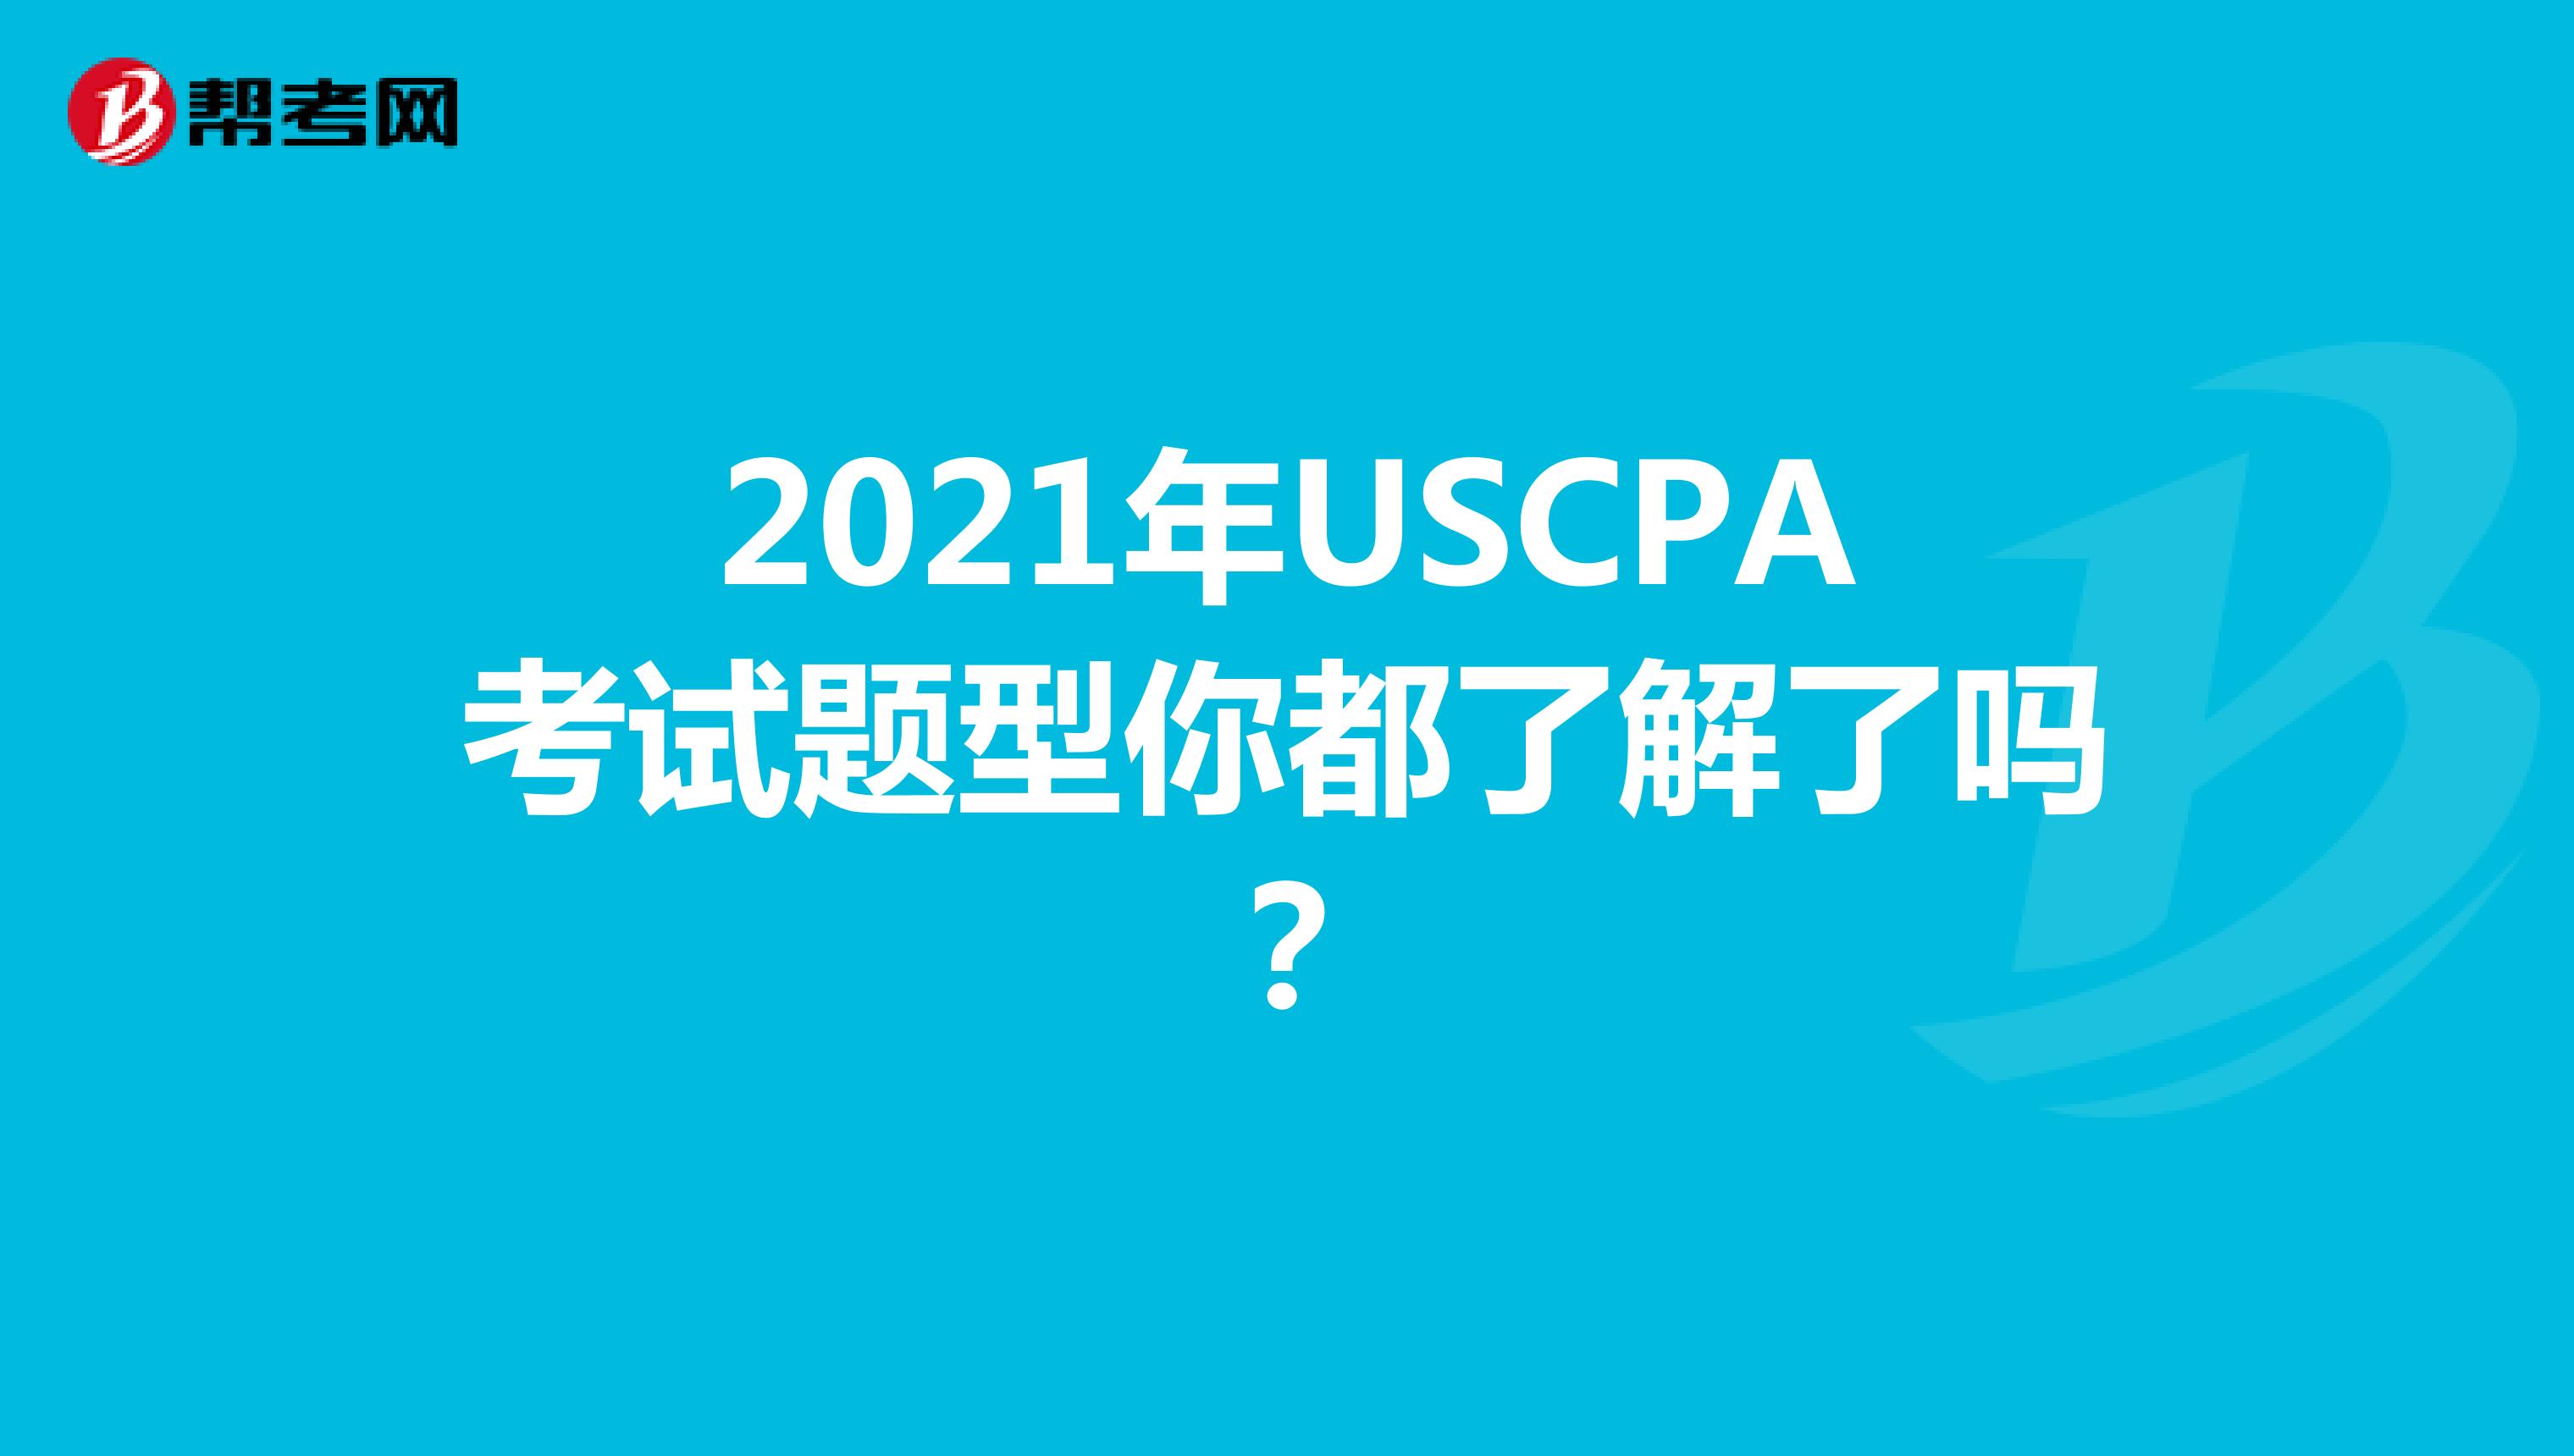 2021年USCPA考试题型你都了解了吗？